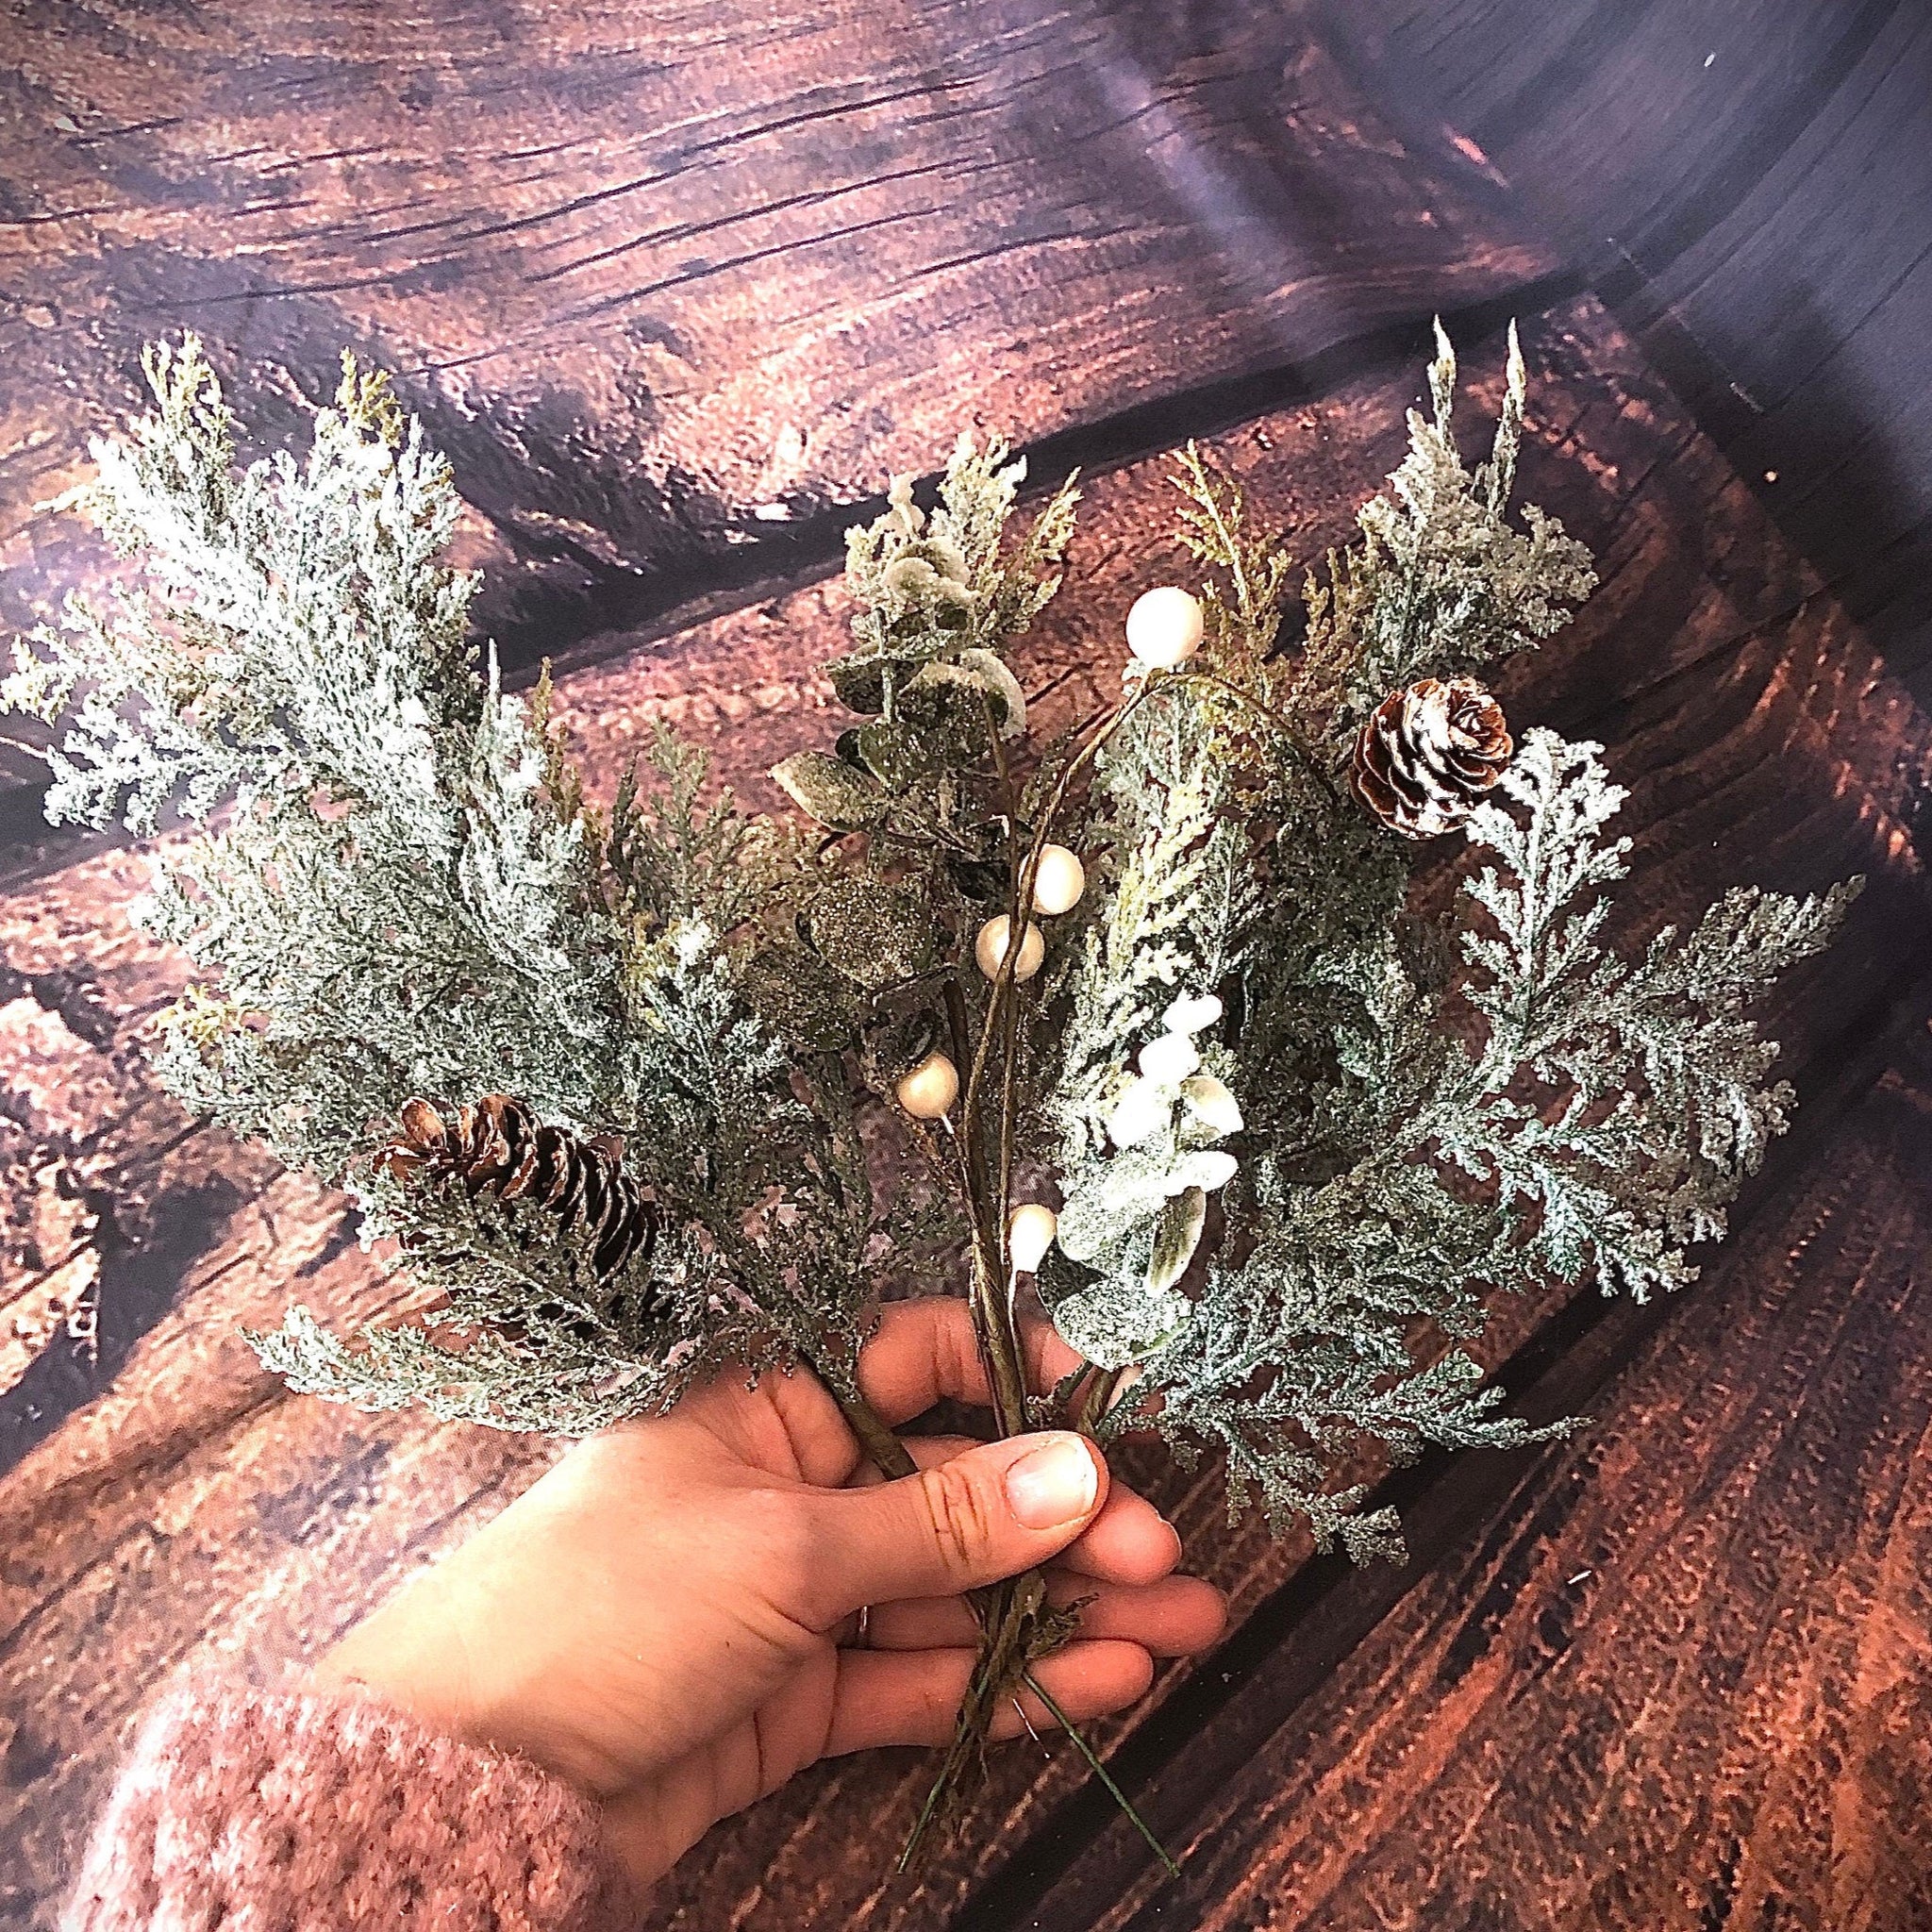 Glittered cedar and eucalyptus winter floral arrangement